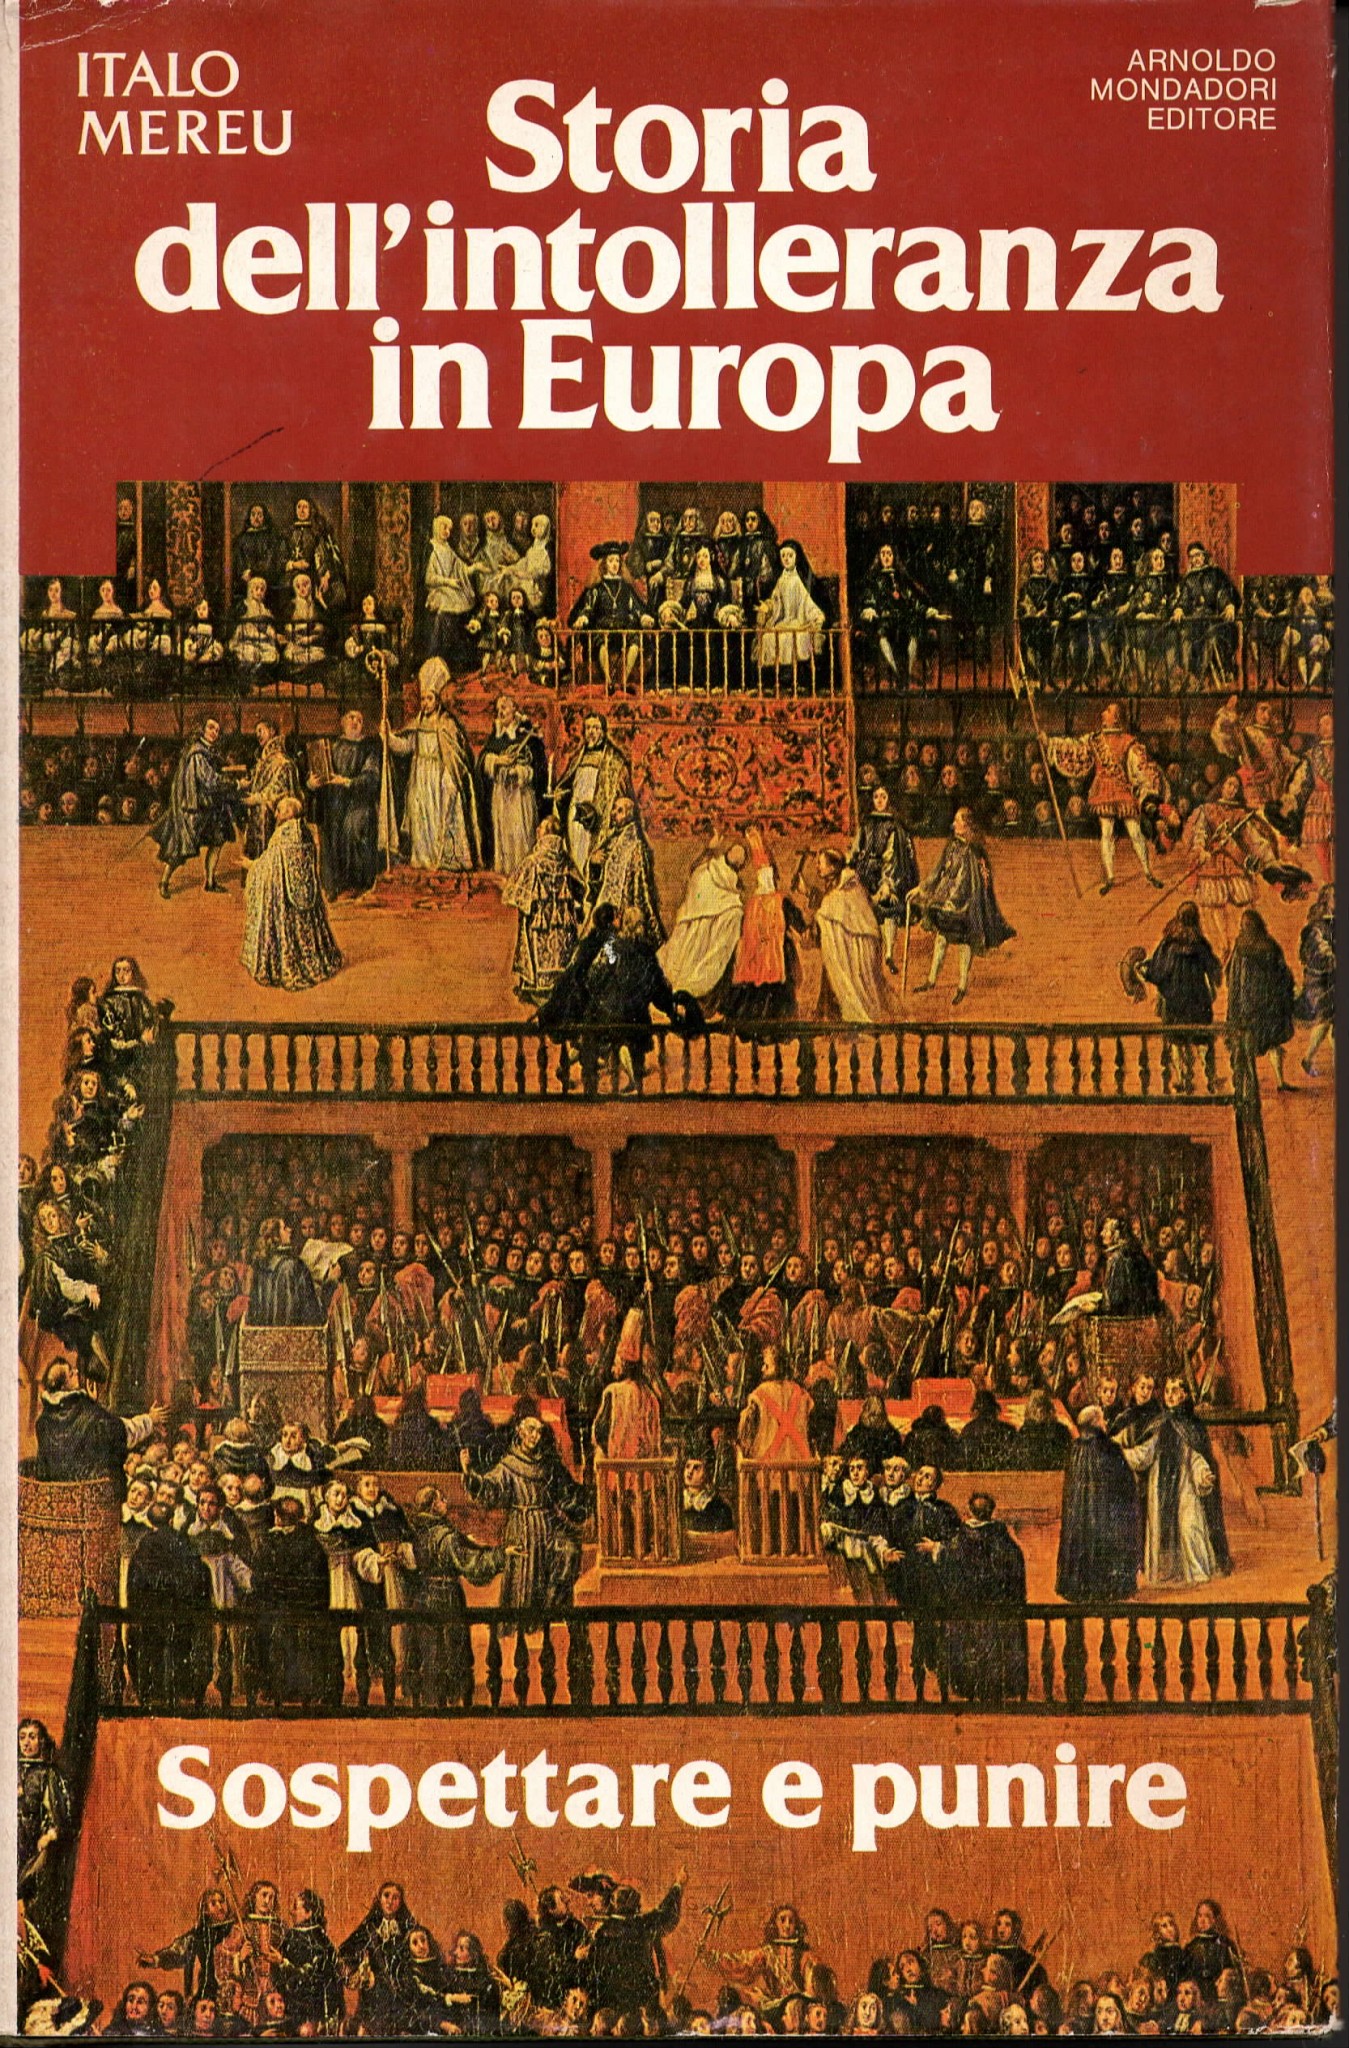 Italo Mereu, Storia dell'intolleranza in Europa (1979)